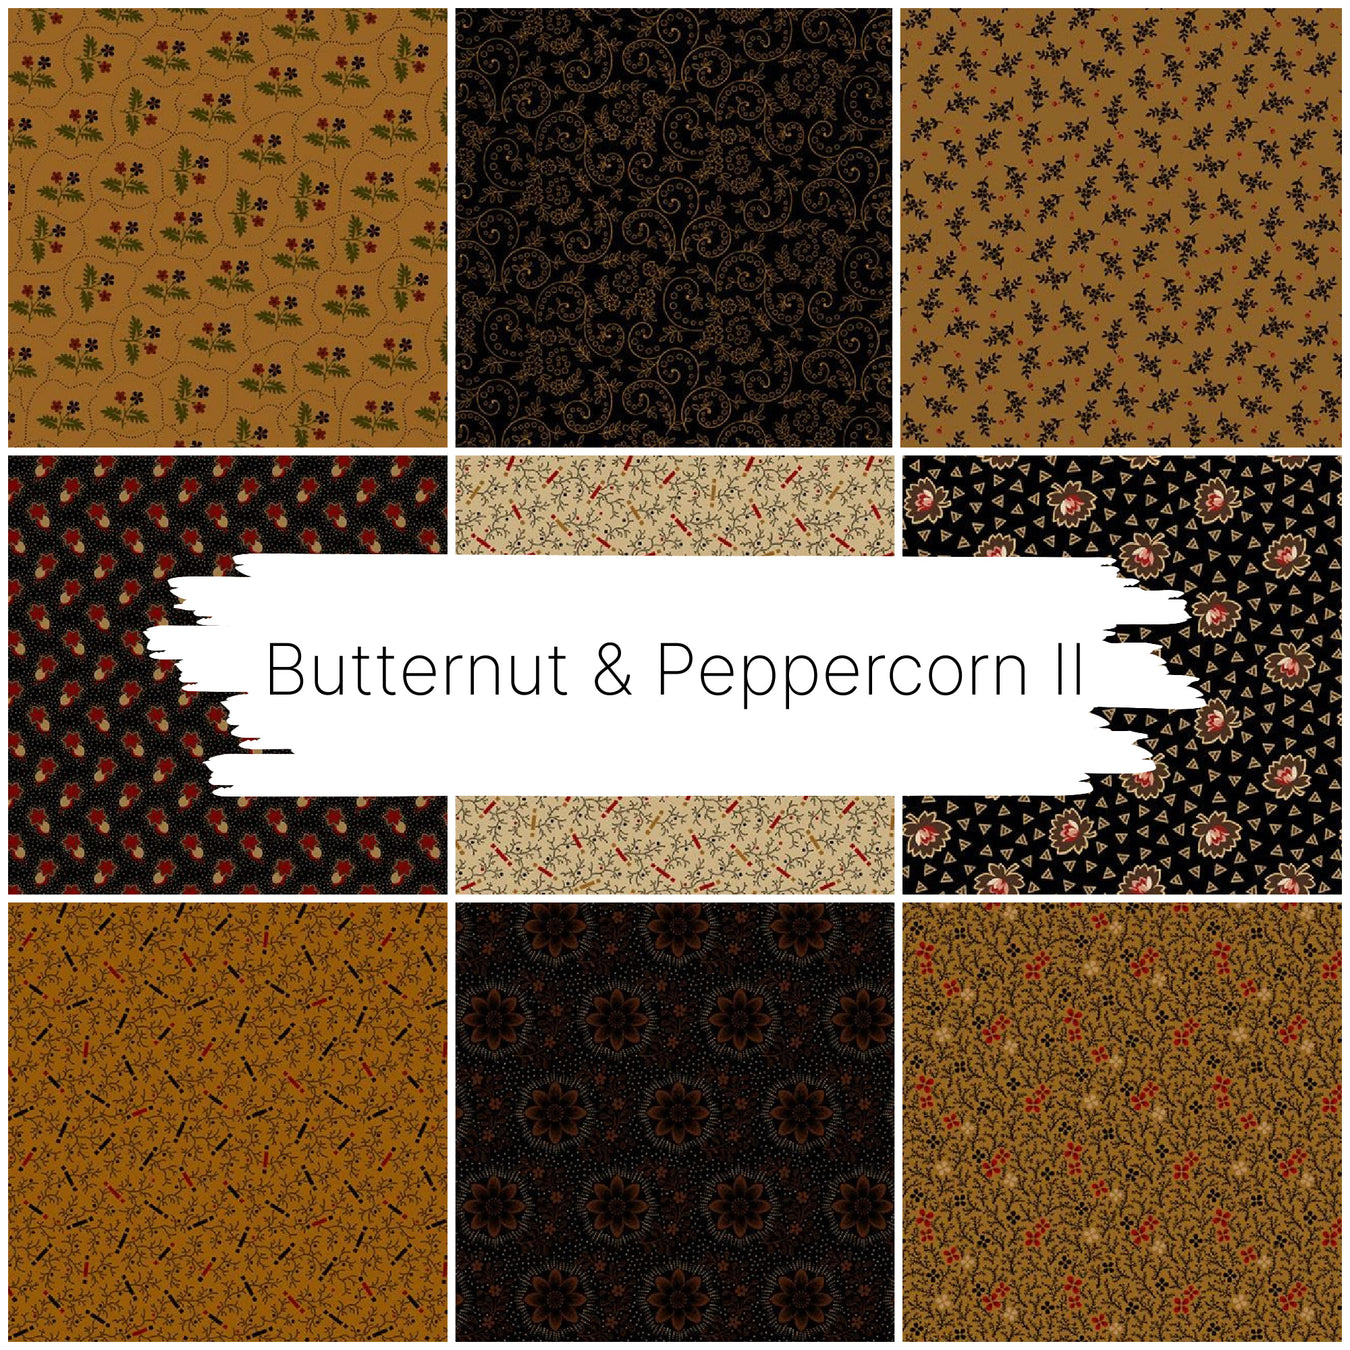 Butternut & Peppercorn II